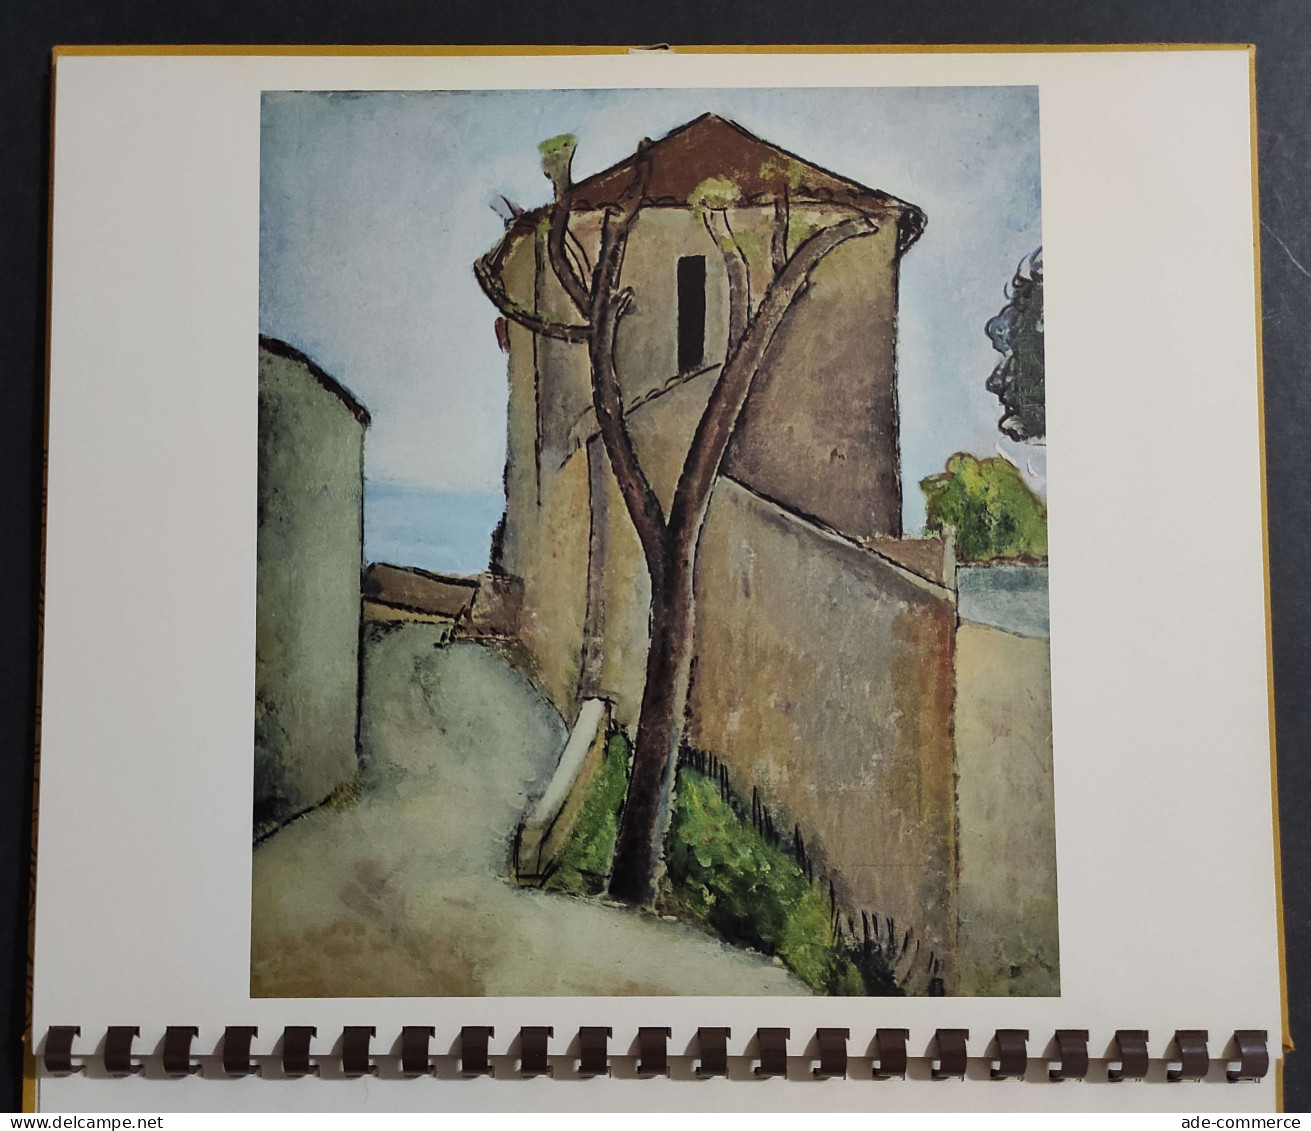 Modigliani - Millenovecento79 - Banca Del Monte Milano - 1979 - Arts, Antiquity